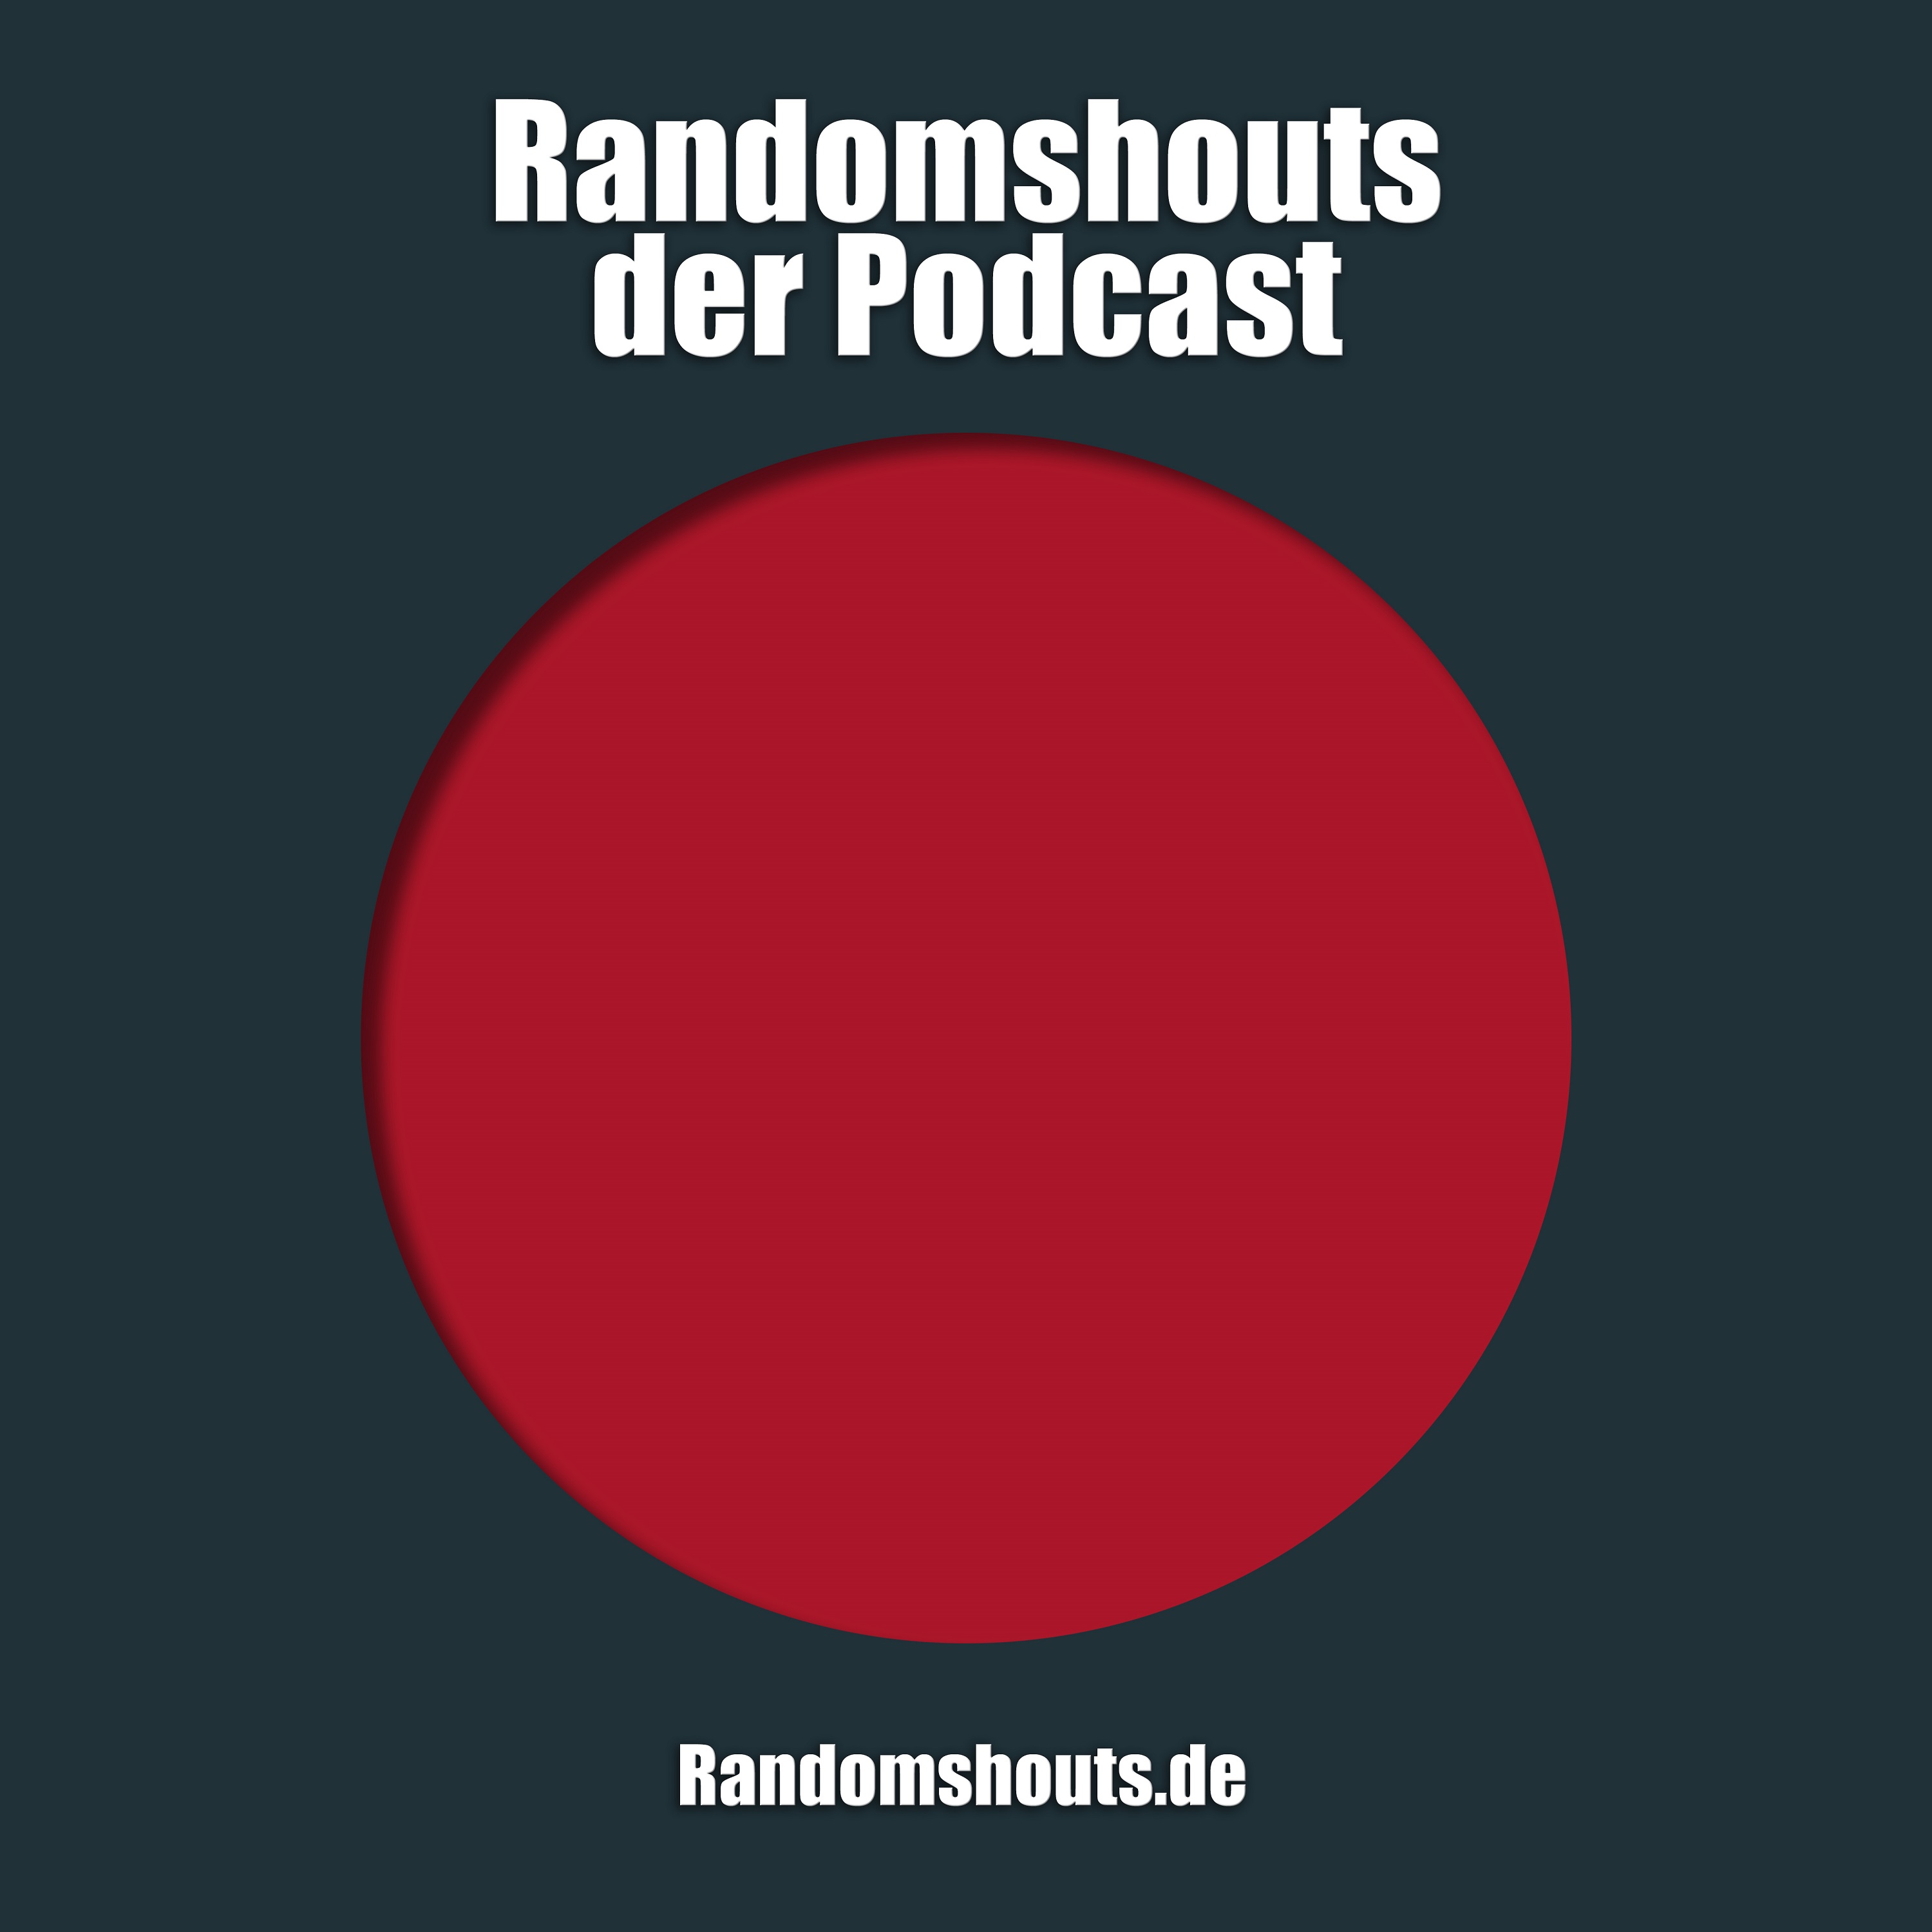 Randomshouts der Podcast - Episode 41: Ein Hurricane ist nicht nur ein Wirbelsturm